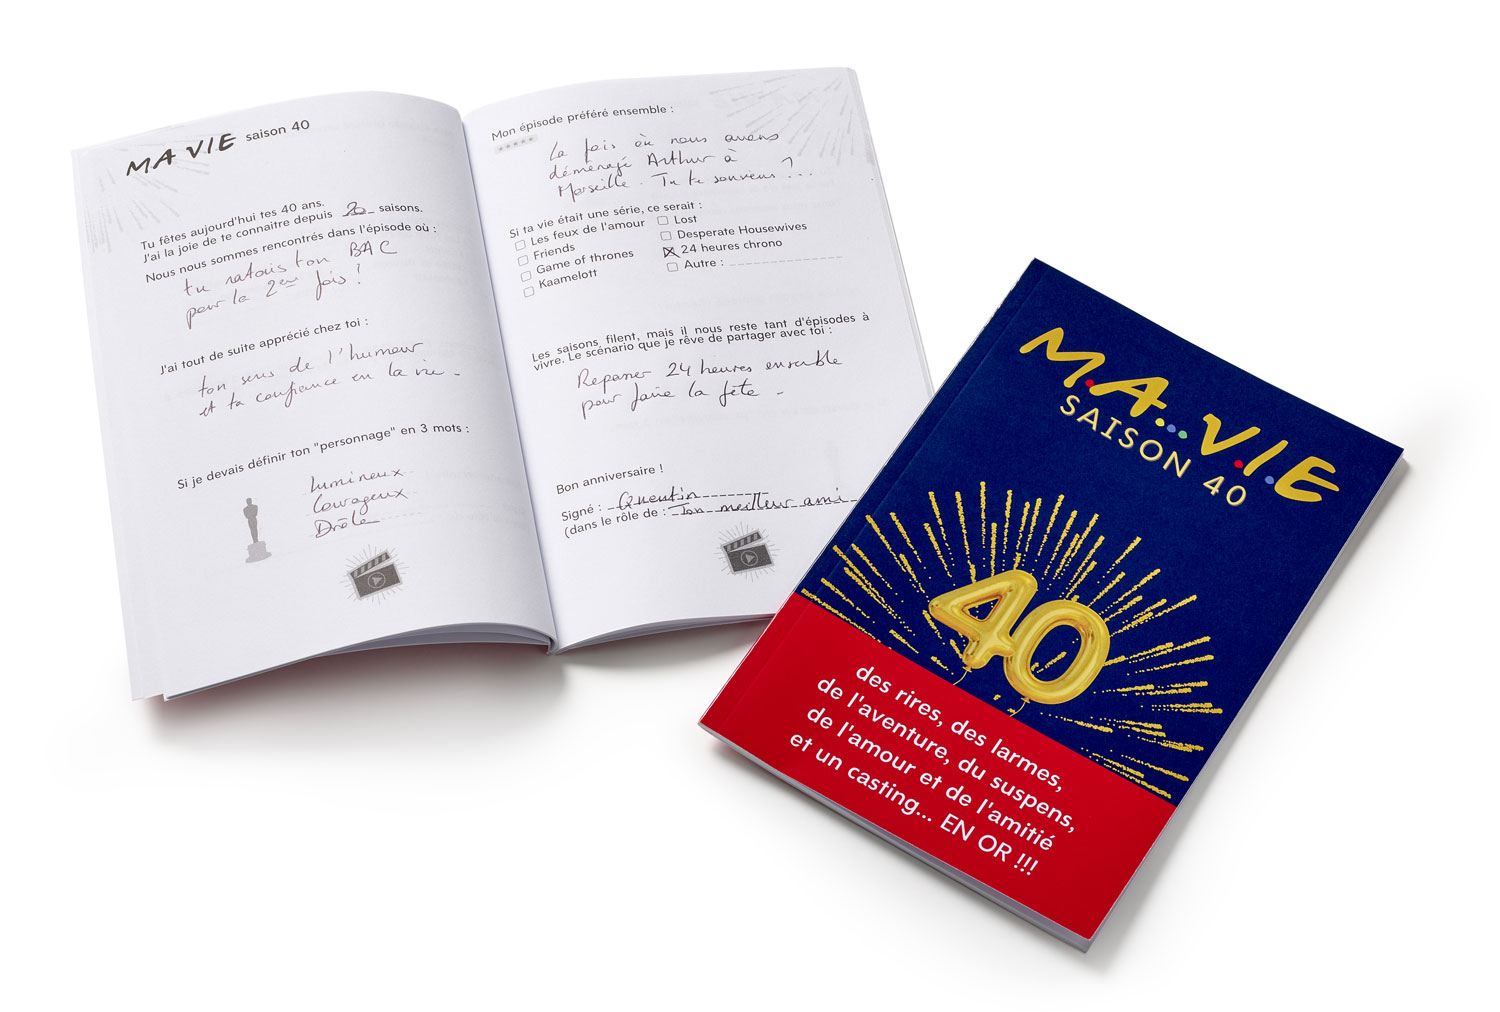 Cadeau Anniversaire 40 ans original : livre d\'or Ma Vie Saison 40